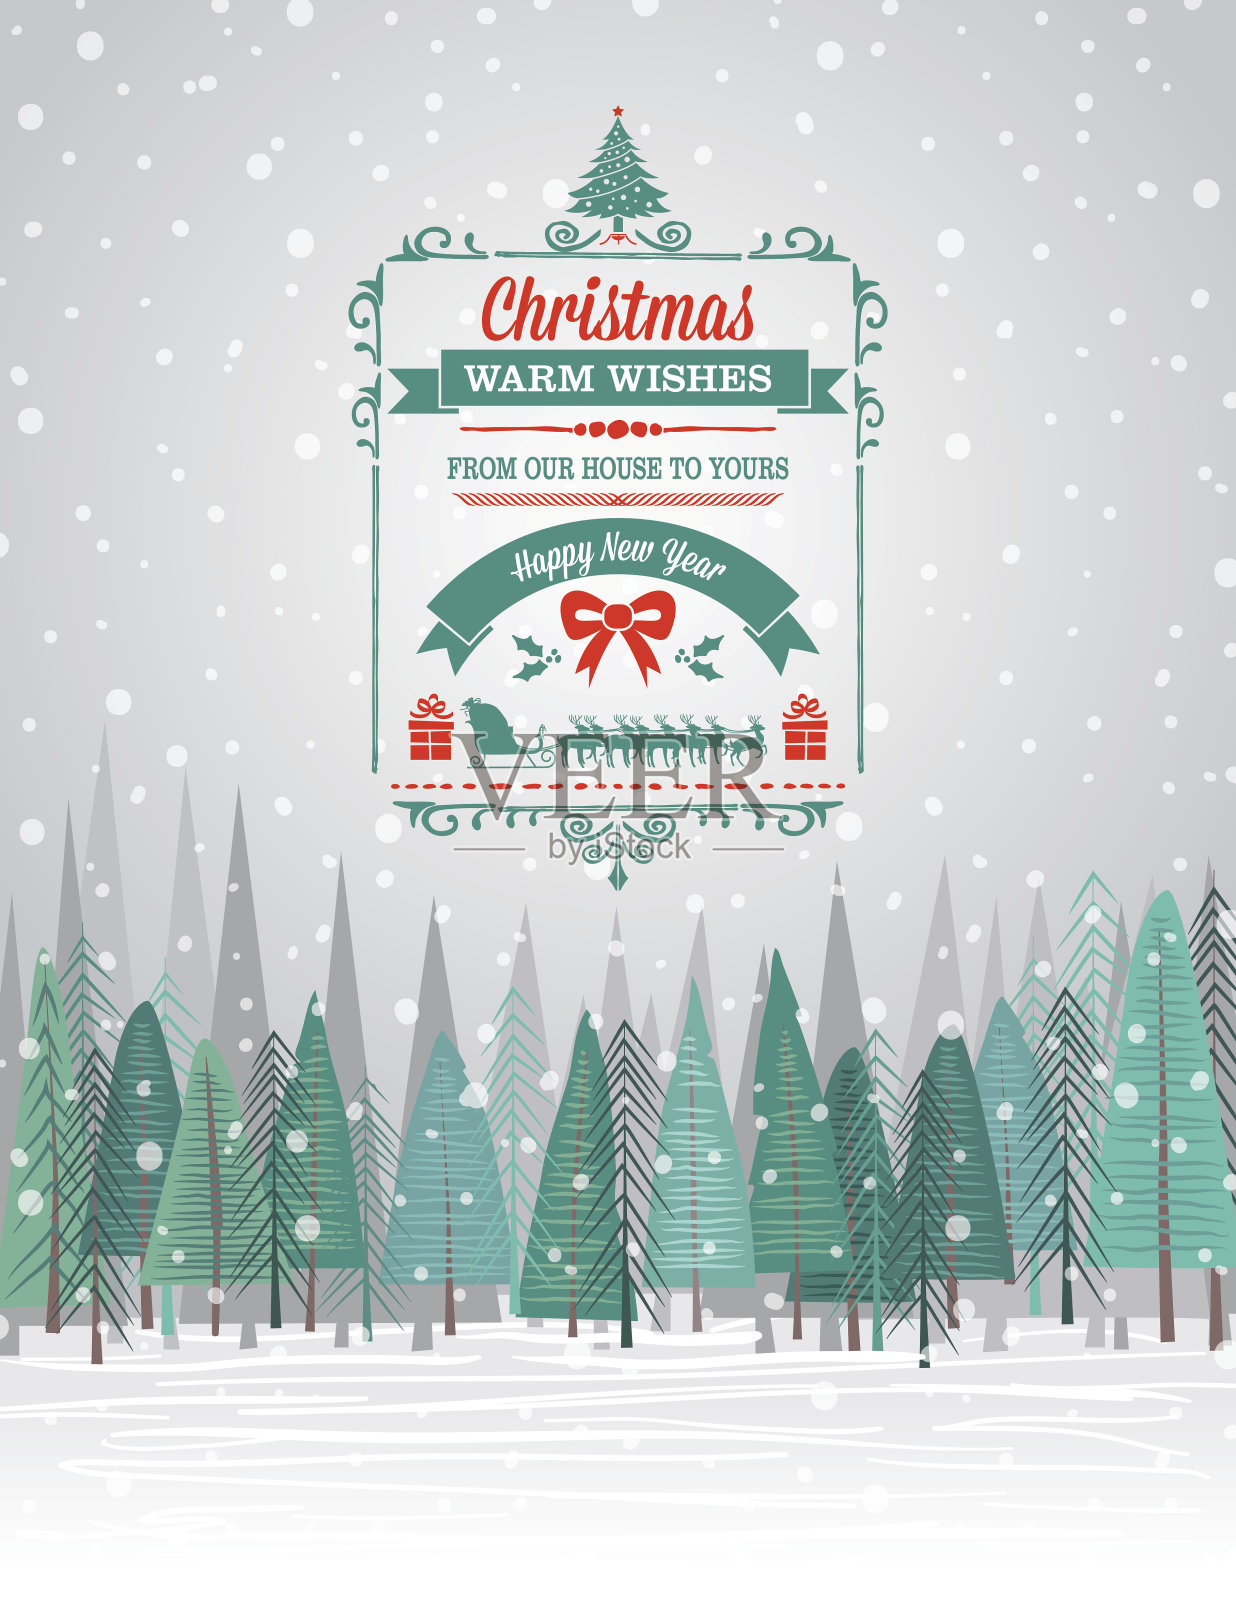 雪花圣诞贺卡与森林和节日的季节性装饰设计模板素材